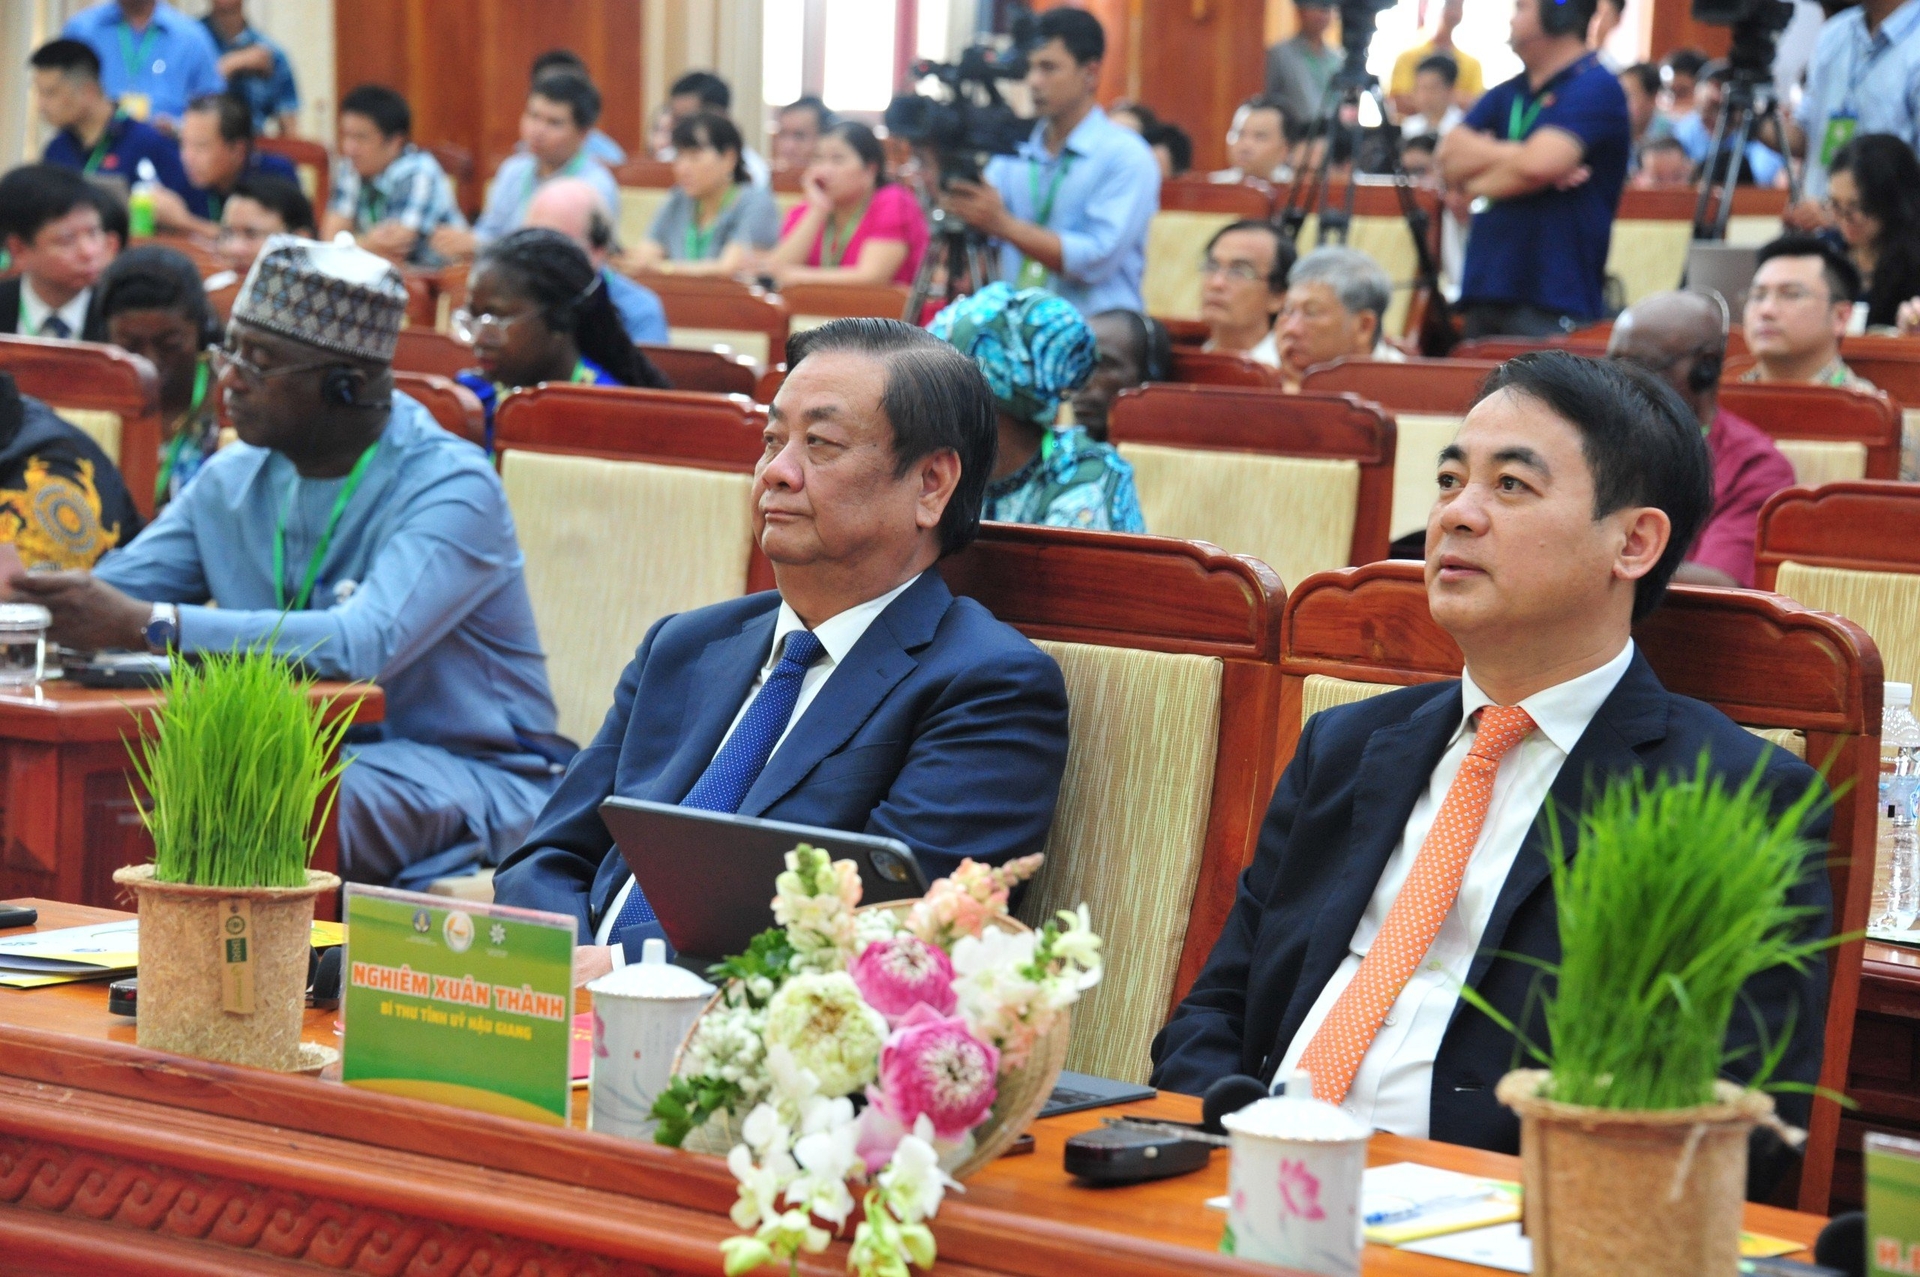 Hội thảo chiều 12/12 có sự tham gia của Bộ trưởng Lê Minh Hoan, Bí thư Nghiêm Xuân Thành cùng nhiều lãnh đạo Trung ương, địa phương.